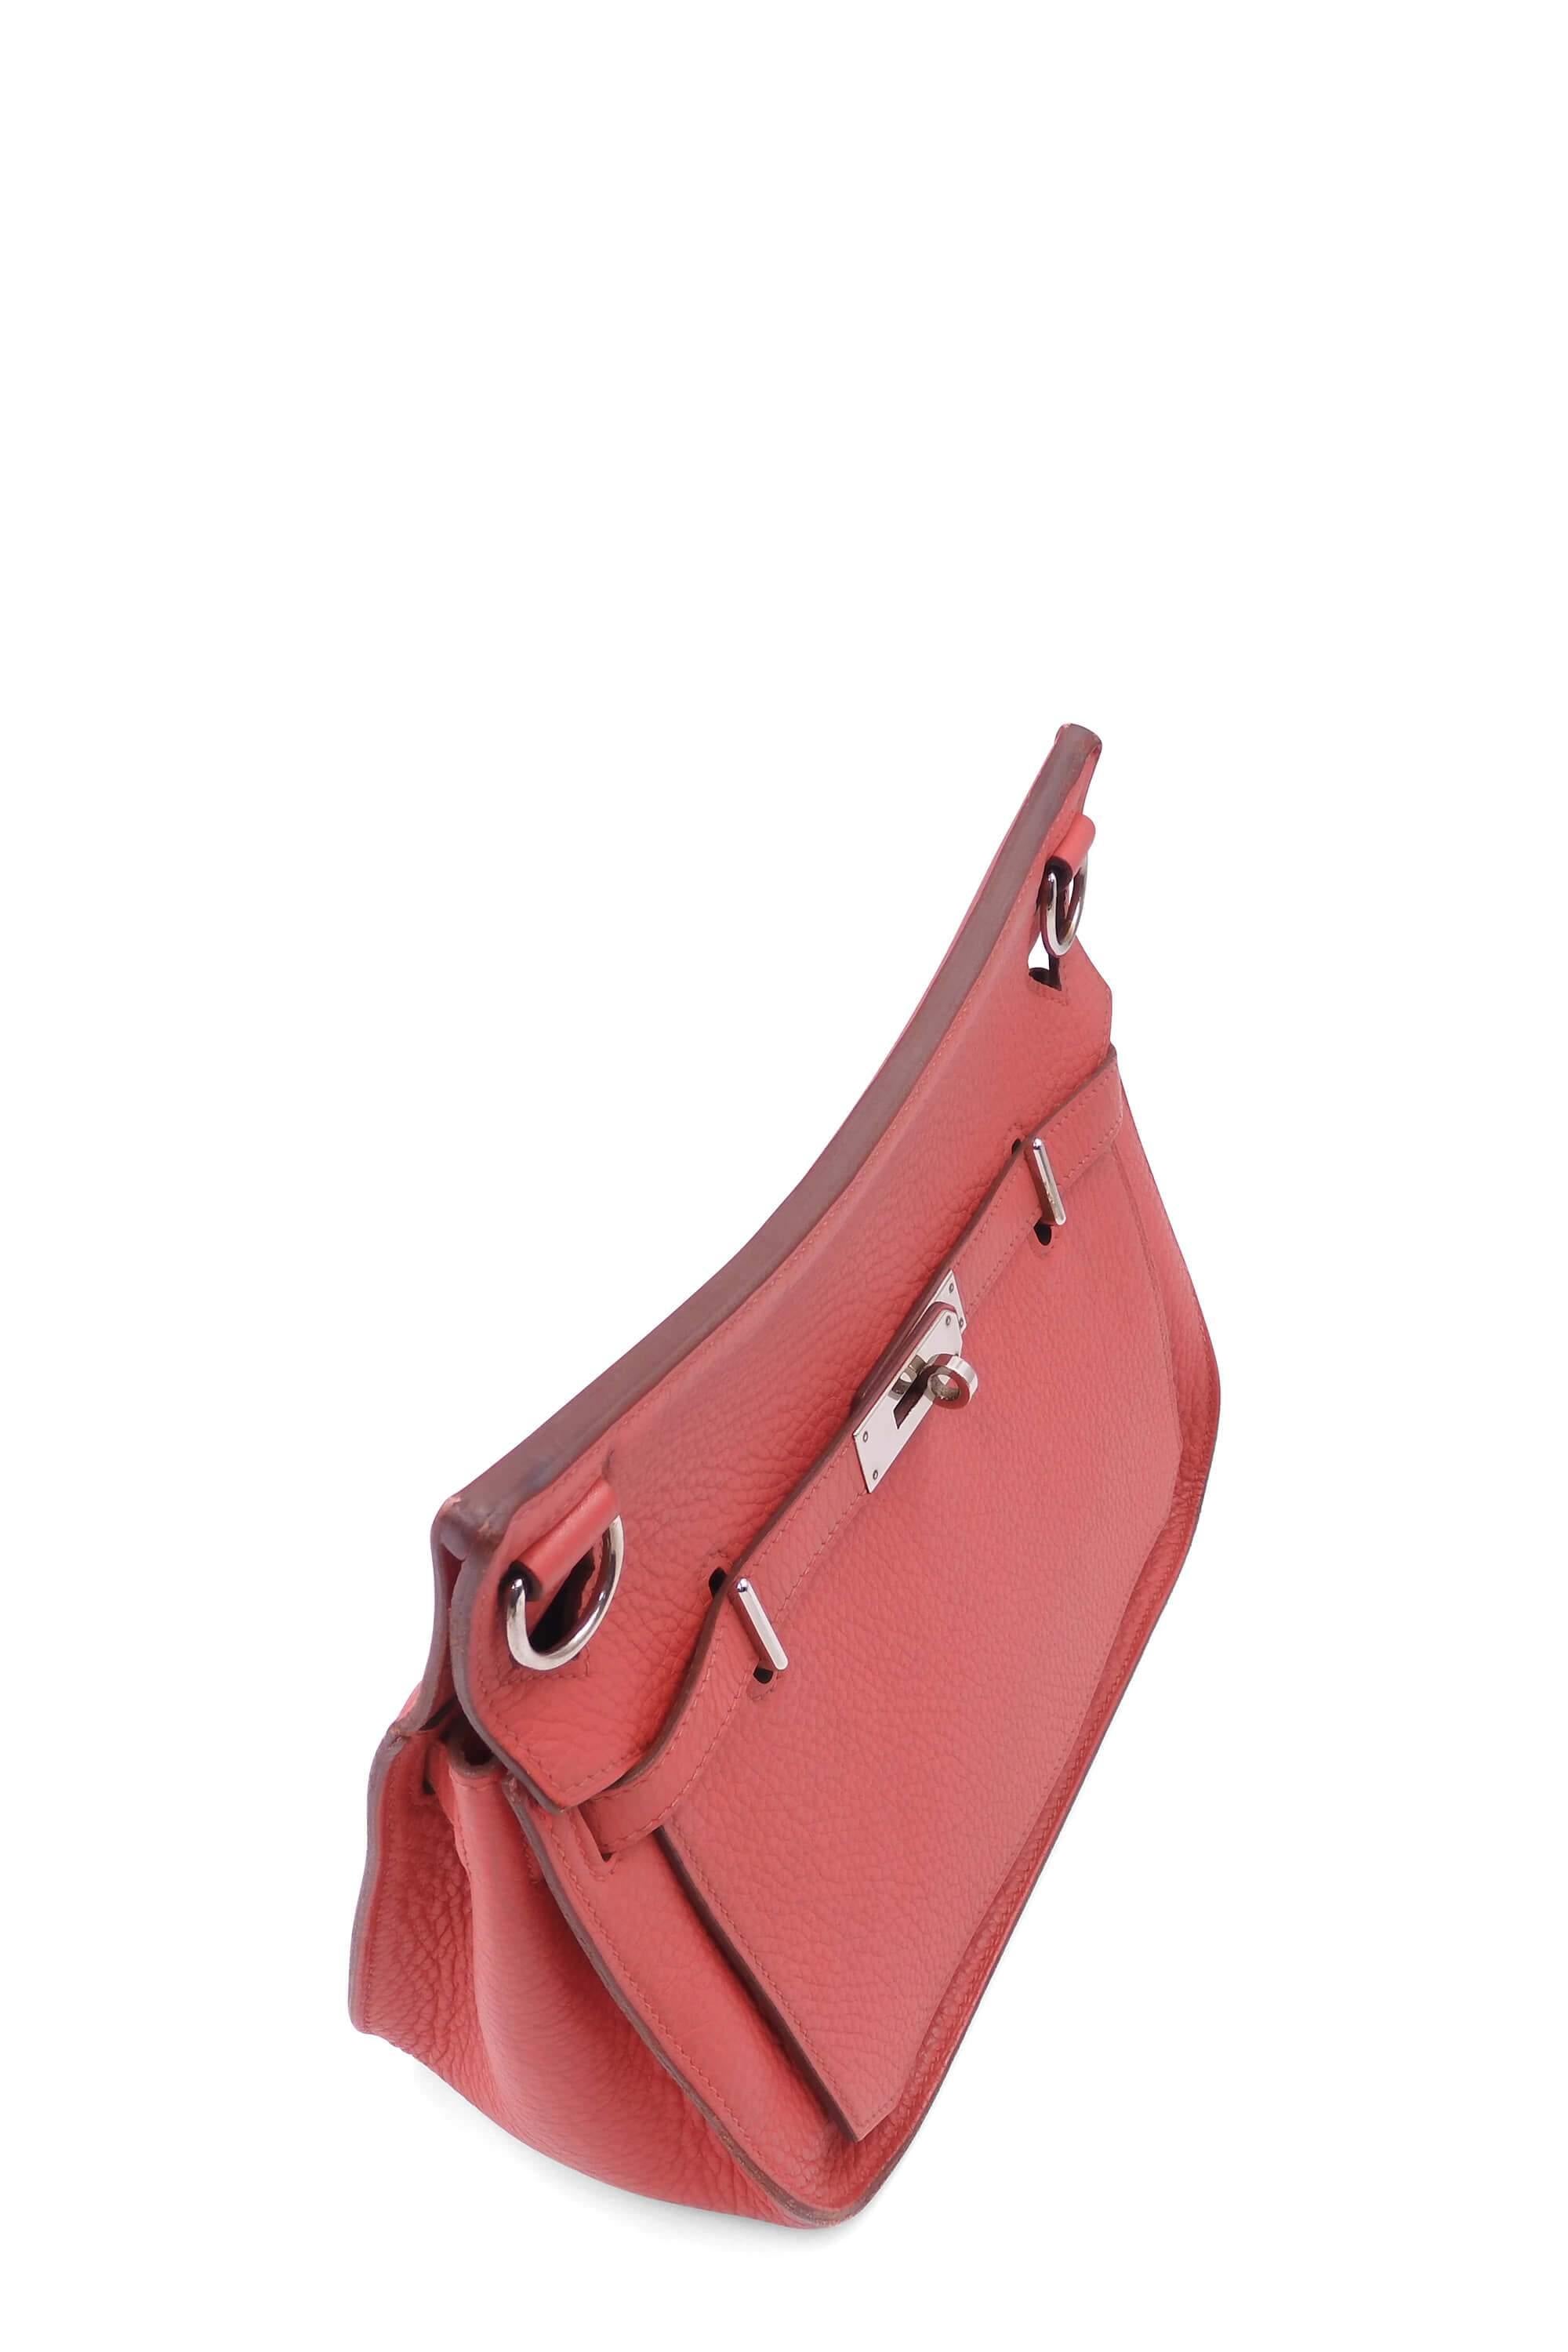 Hermes Jypsiere 28 Shoulder Bag - Prestige Online Store - Luxury